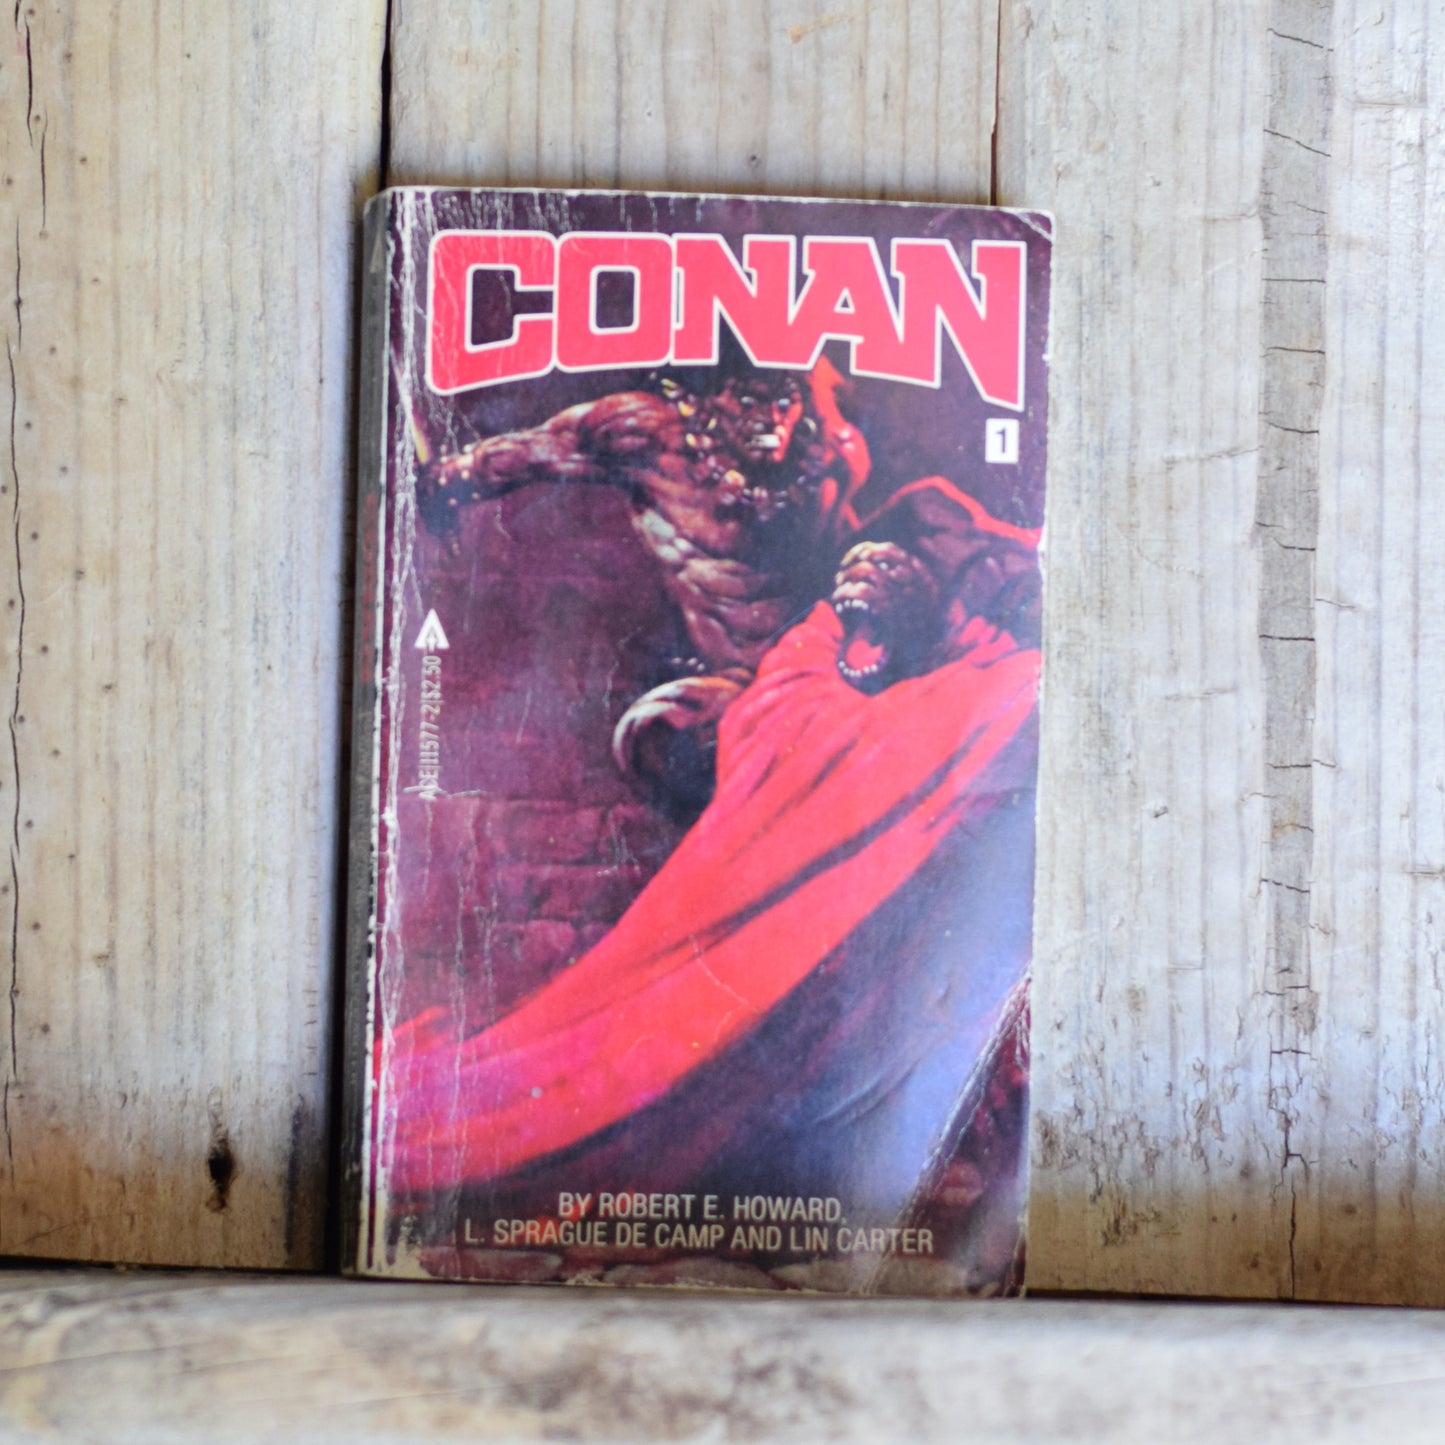 Vintage Fantasy Paperback: Robert E Howard, L Sprague de Camp and Lin Carter - Conan